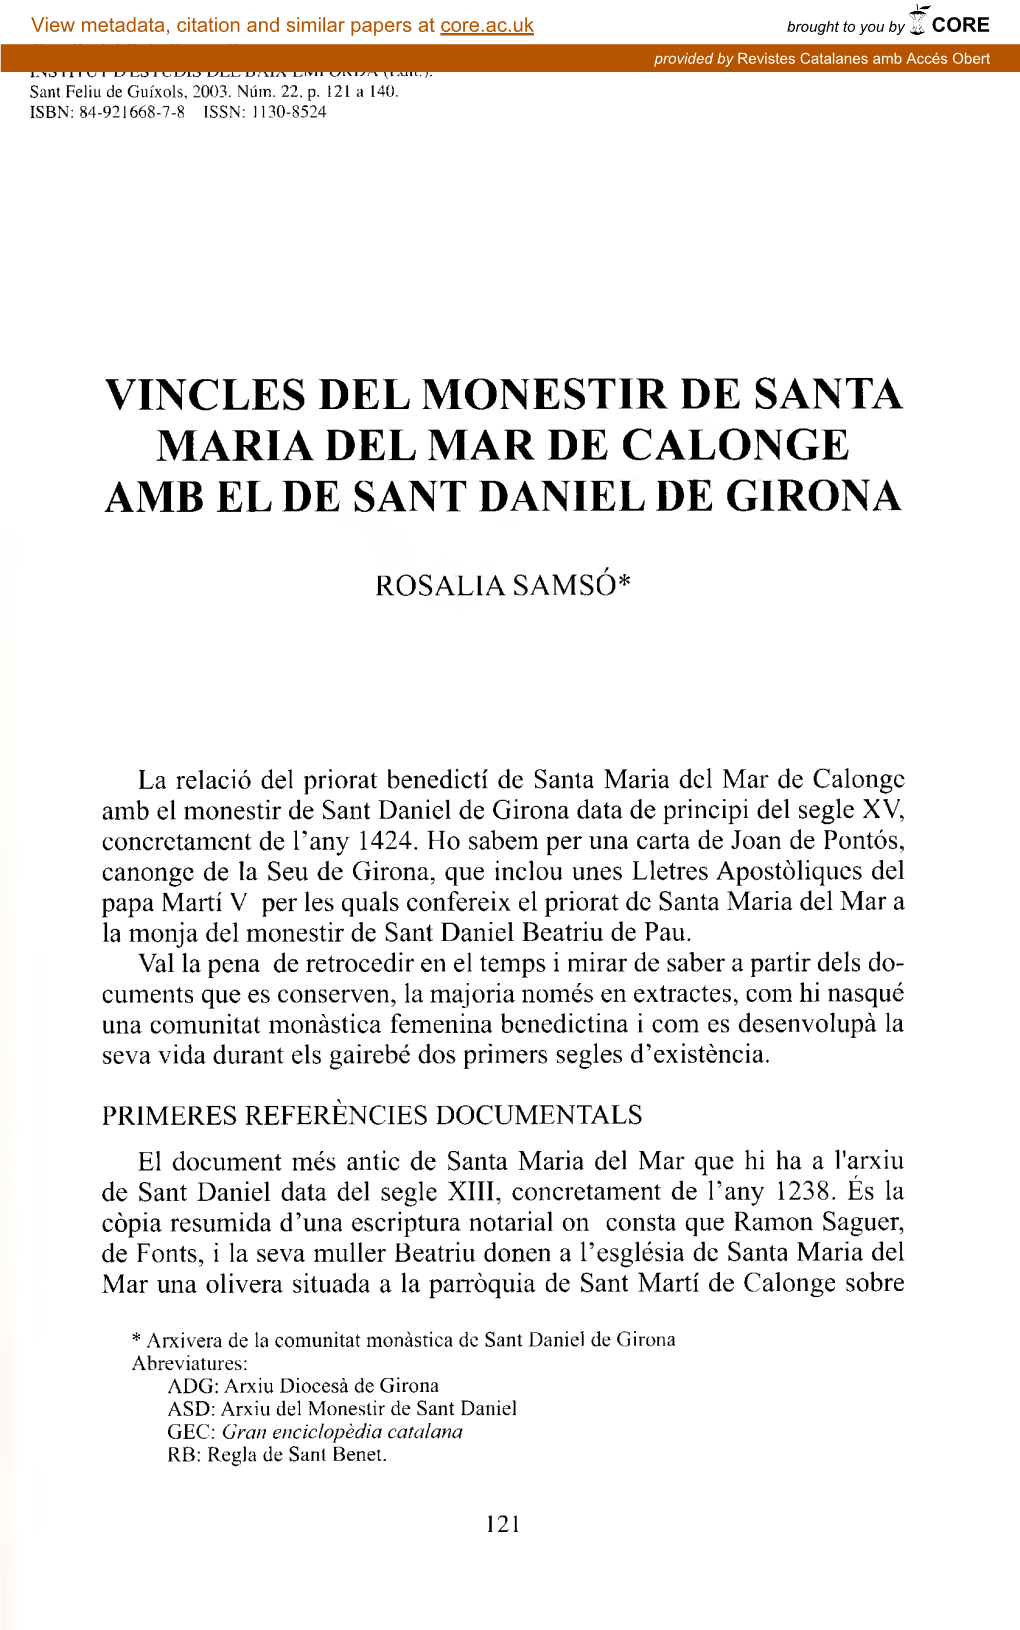 Vincles Del Monestir De Santa Maria Del Mar De Calonge Amb El De Sant Daniel De Girona